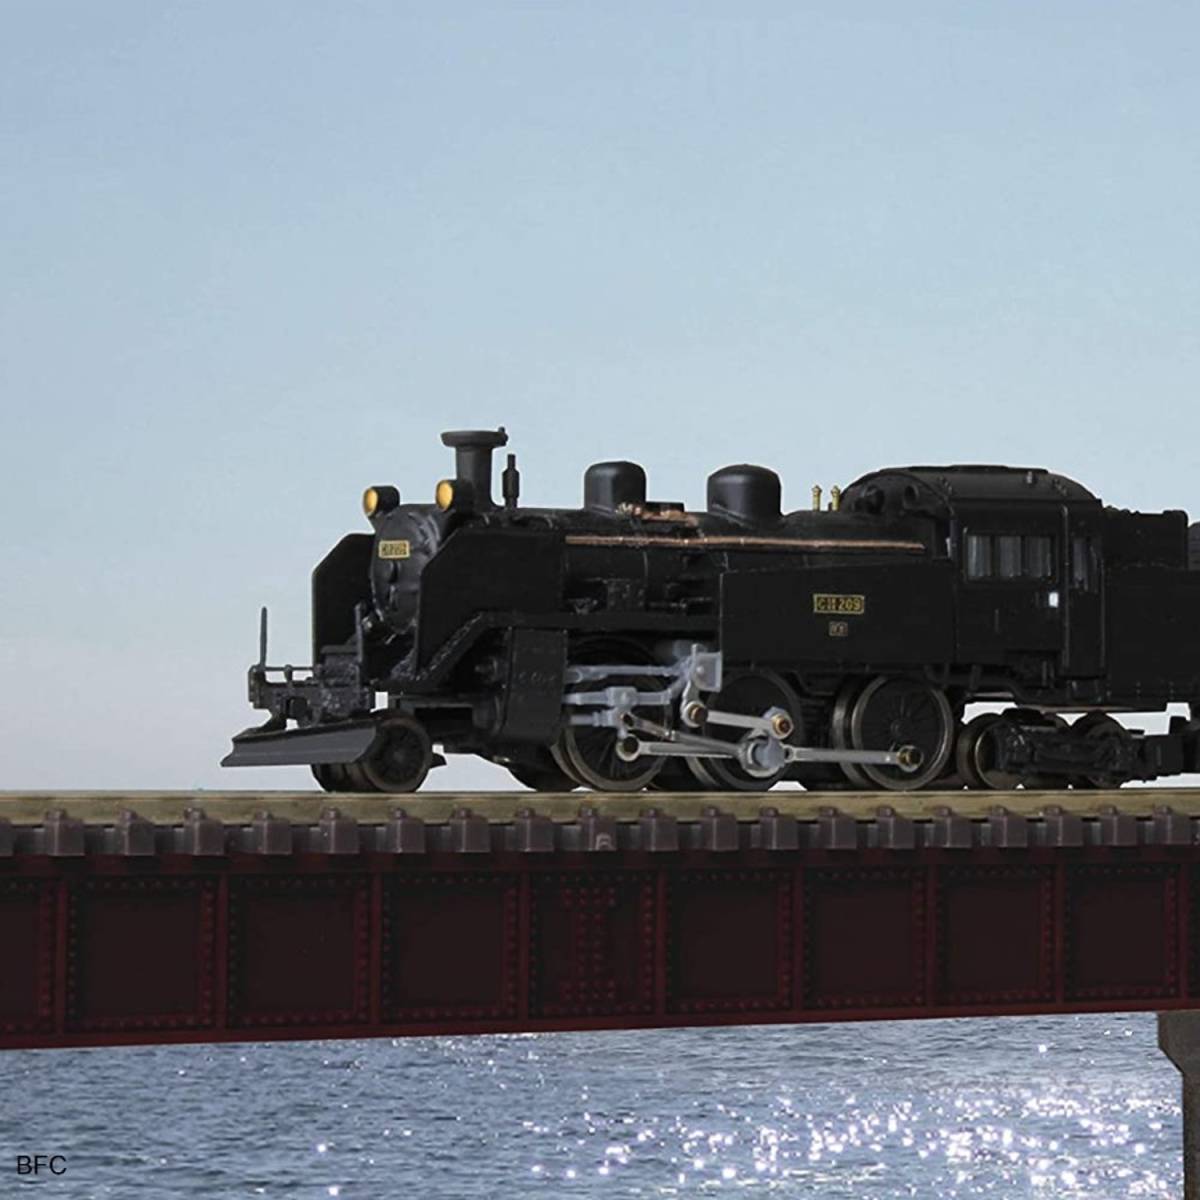 Zゲージ 国鉄 蒸気機関車 C11 209号機 T019-8 北海道2灯タイプ 鉄道模型 ジオラマ ストラクチャー 送料無料